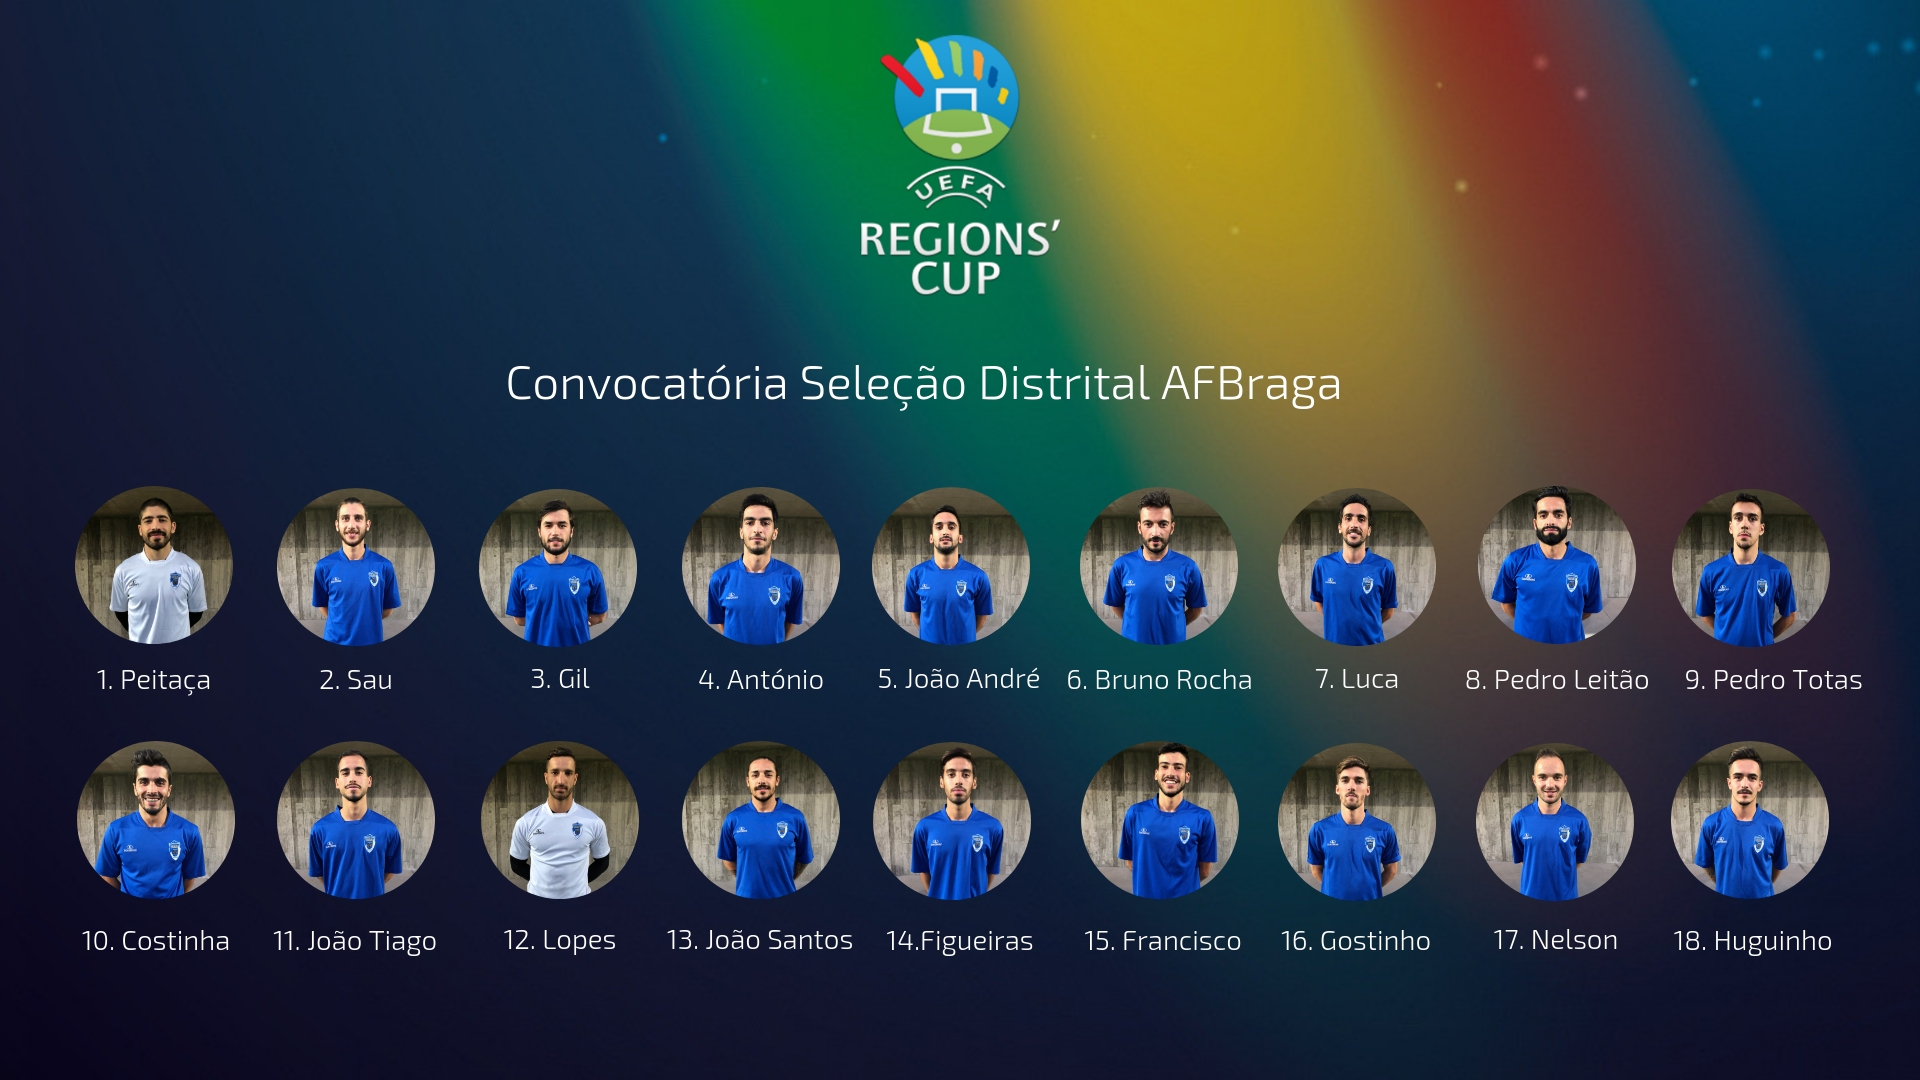 UEFA REGIONS CUP - Convocatória Seleção Distrital AFBraga